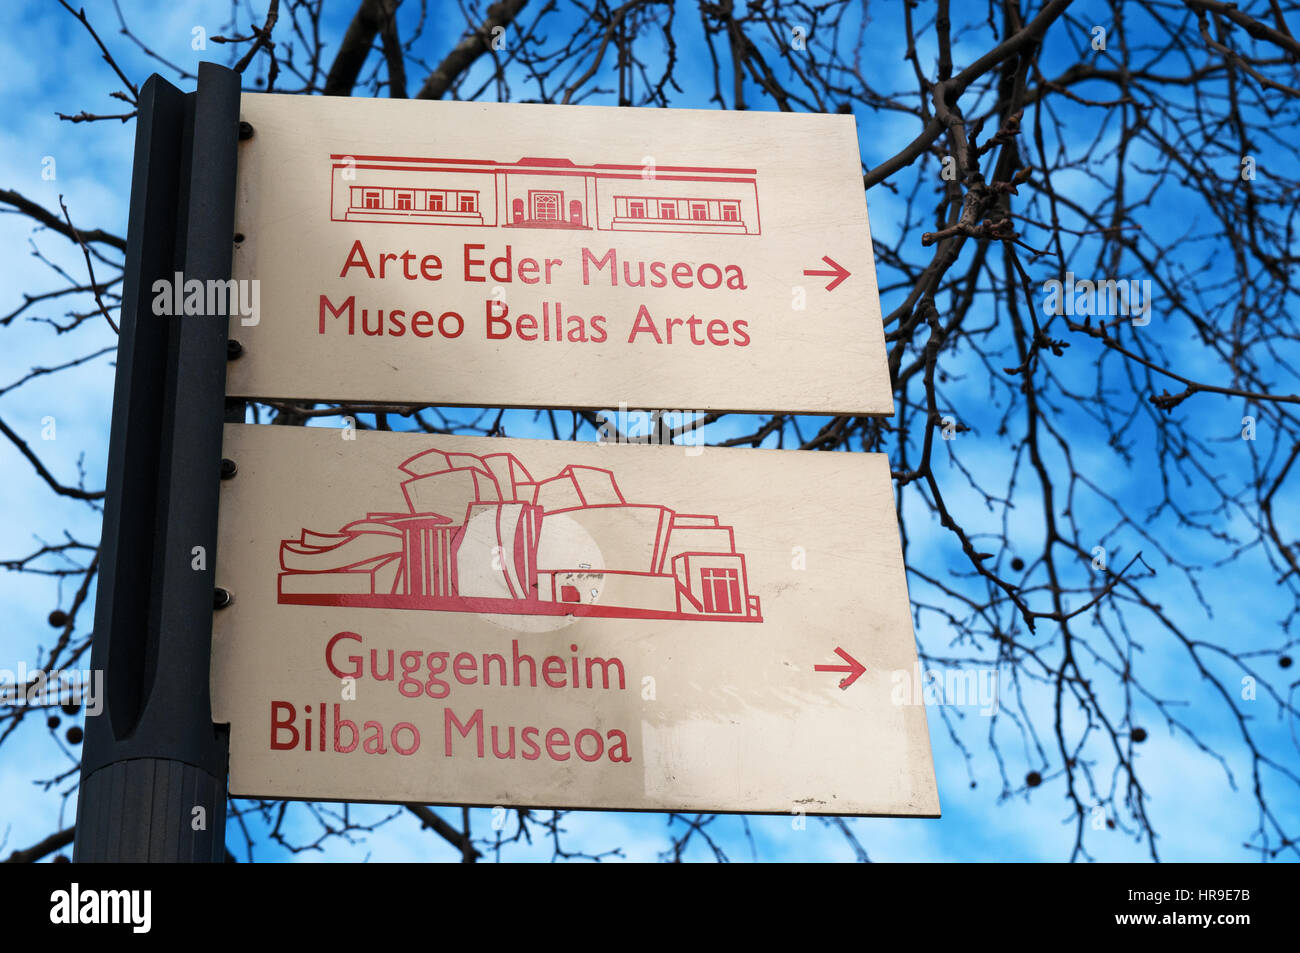 Bilbao, Spagna: le indicazioni per il Museo delle Belle Arti di Bilbao e dal Guggenheim Museum Bilbao Foto Stock